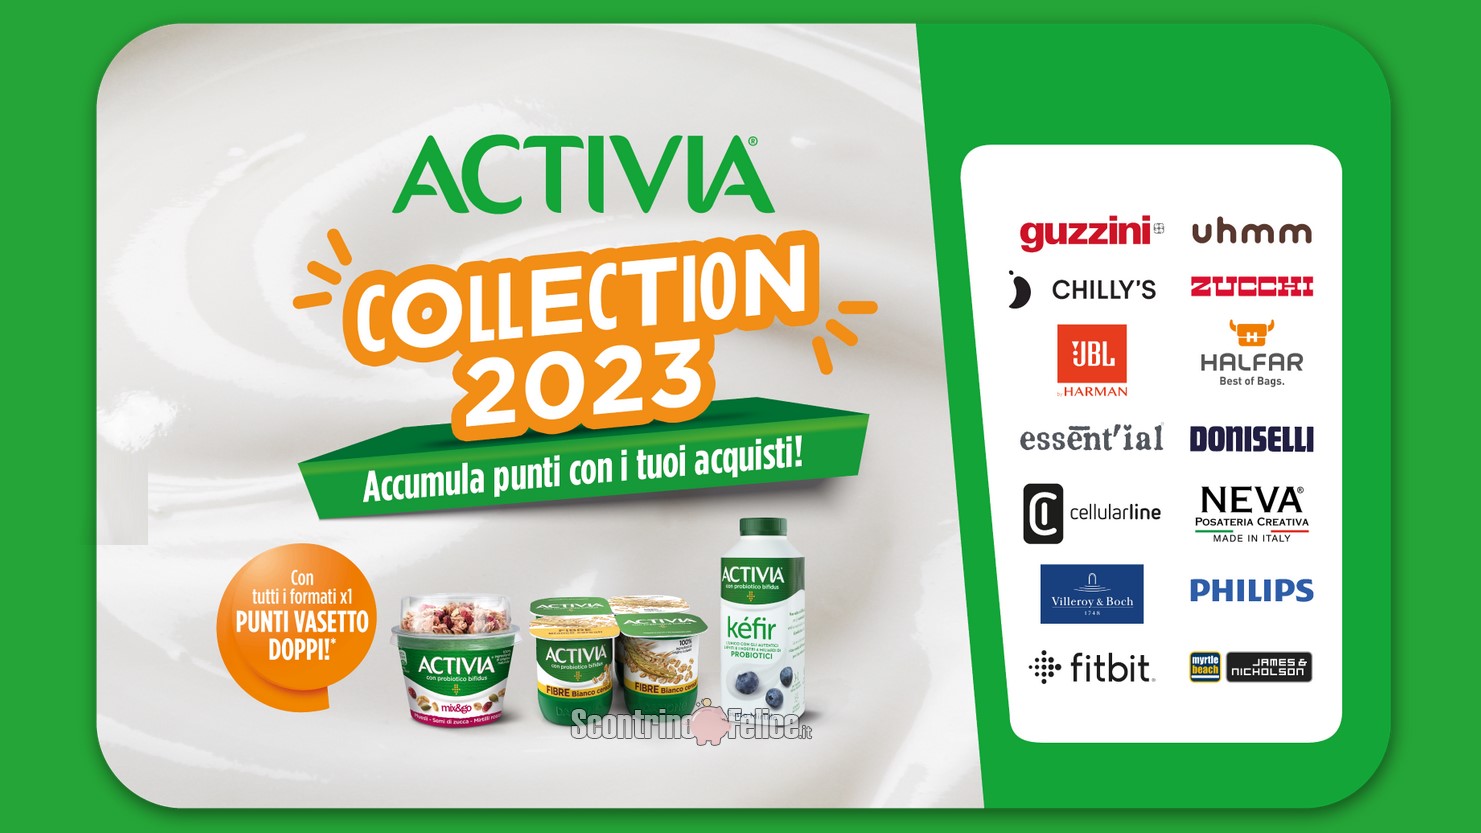 Raccolta Activia Collection 2023: accumula punti e richiedi premi!